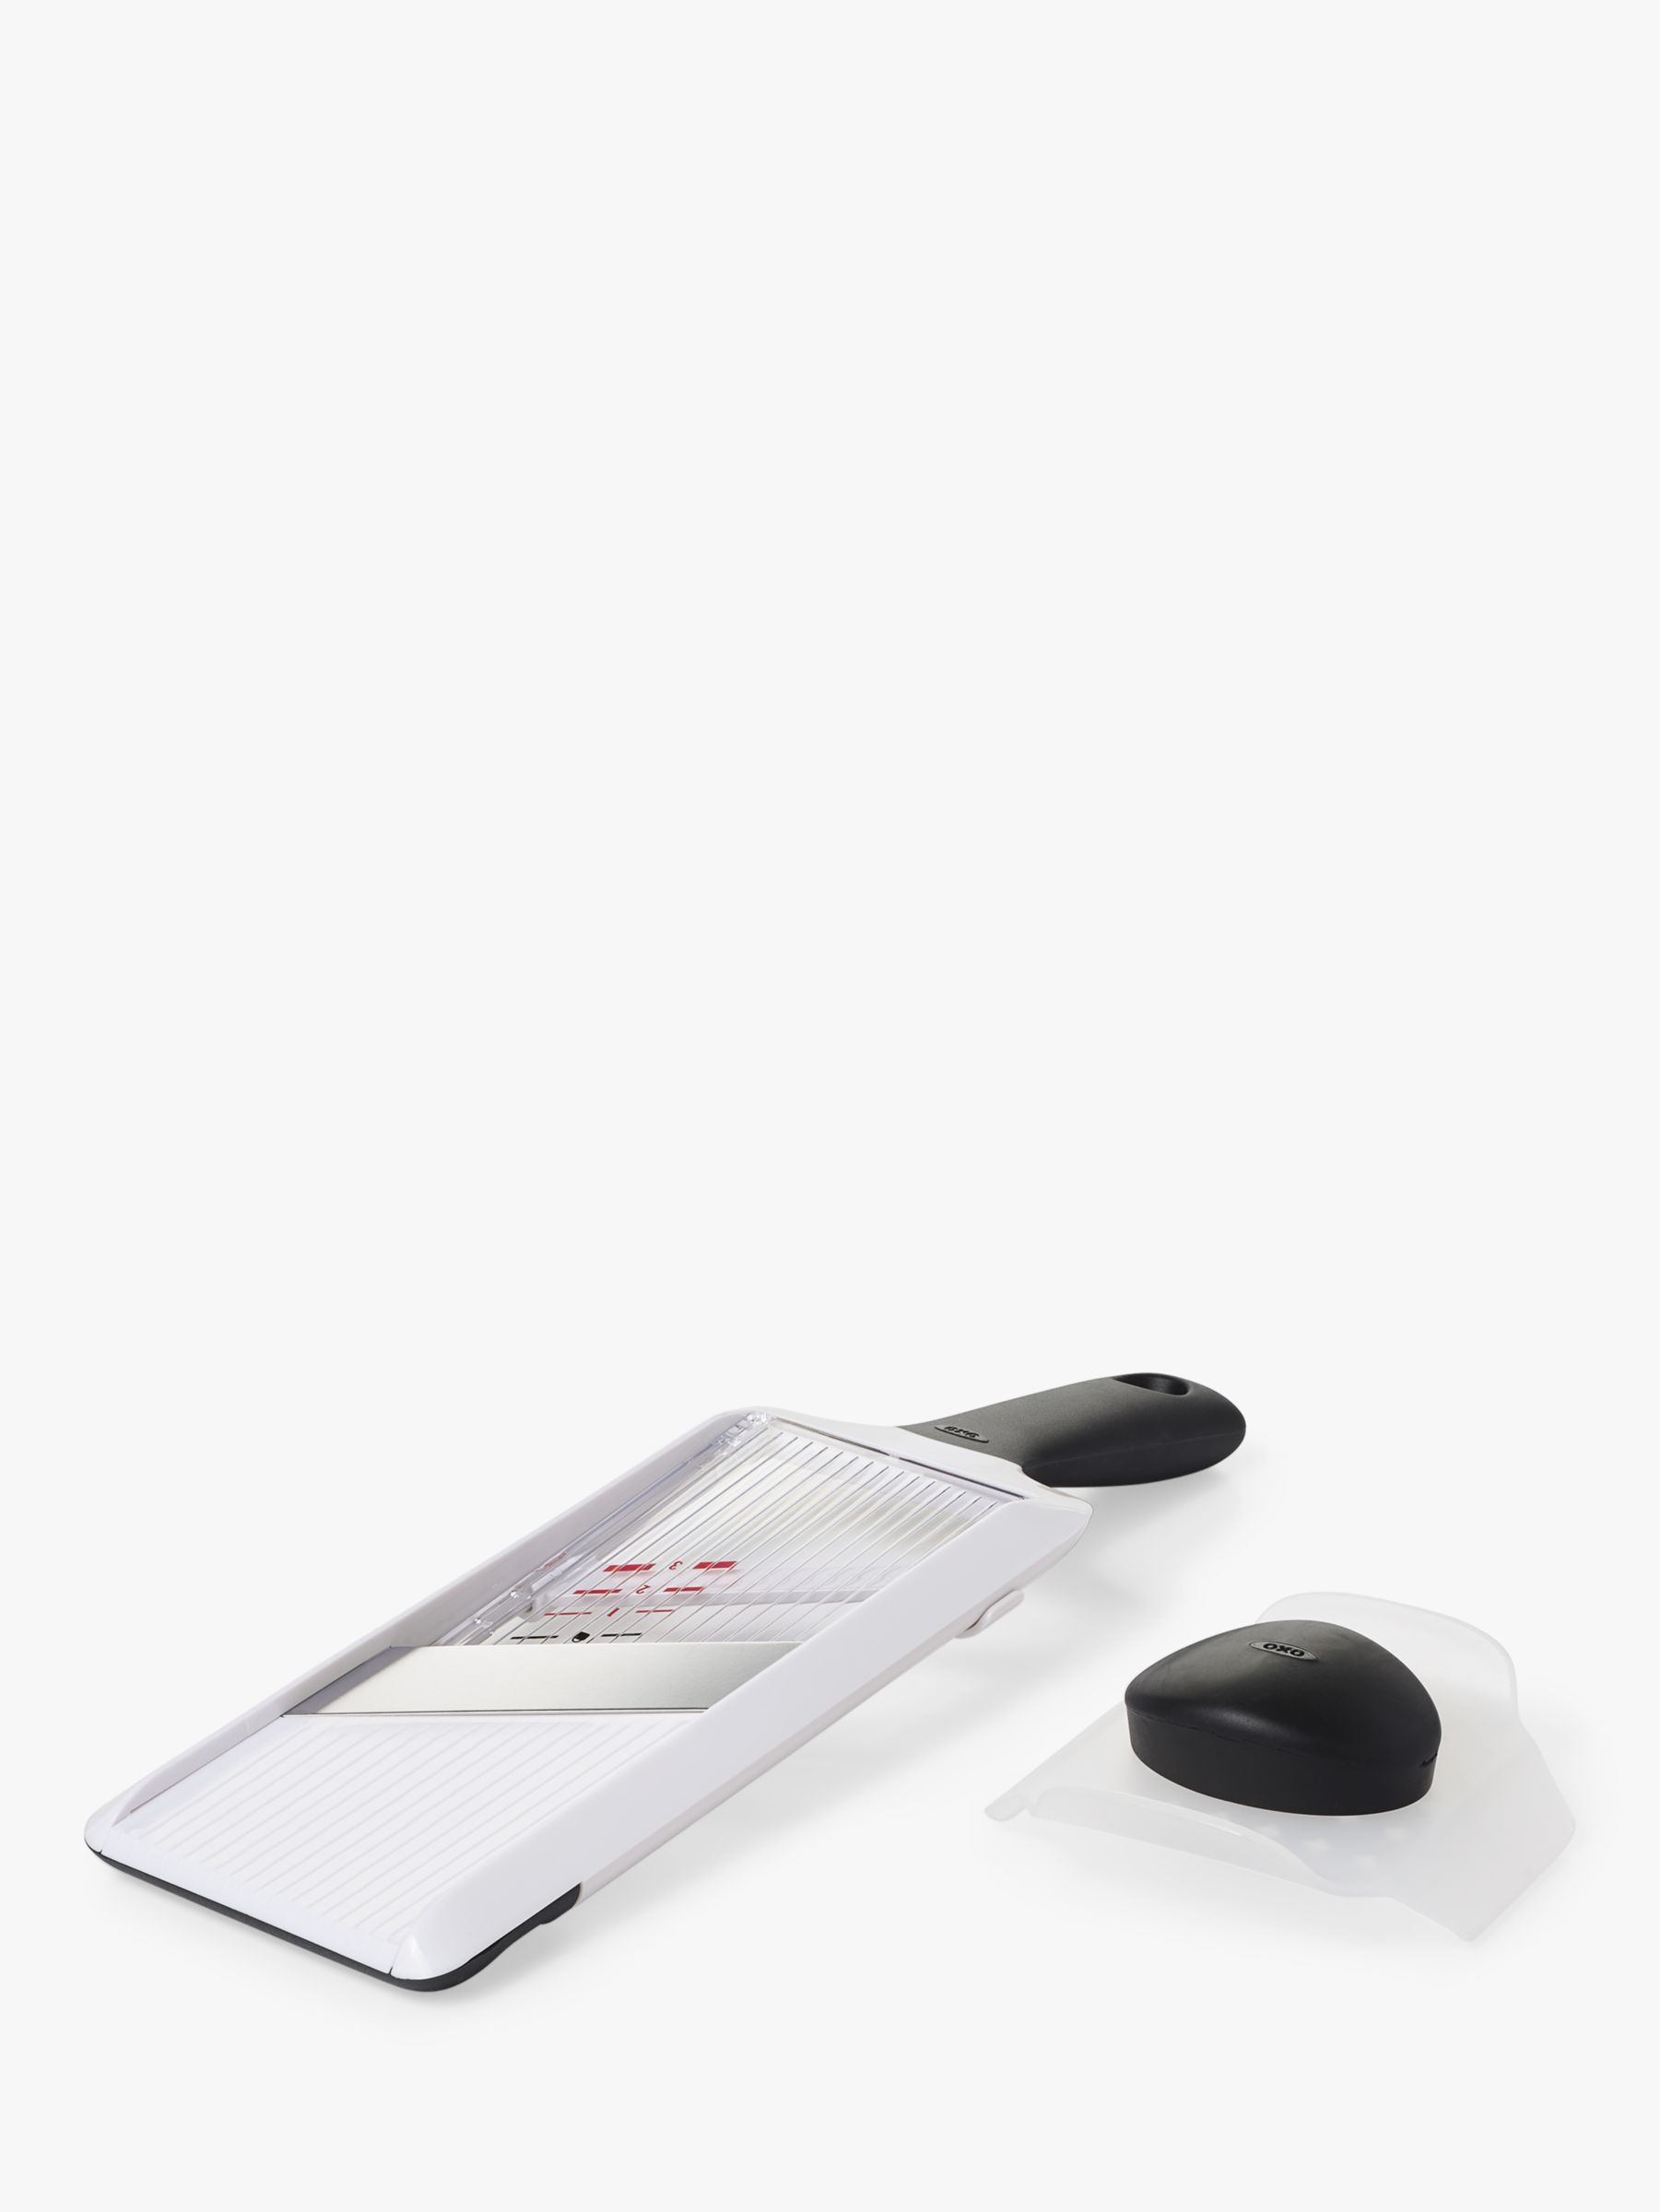 OXO Good Grips Handheld Mandoline Slicer,White